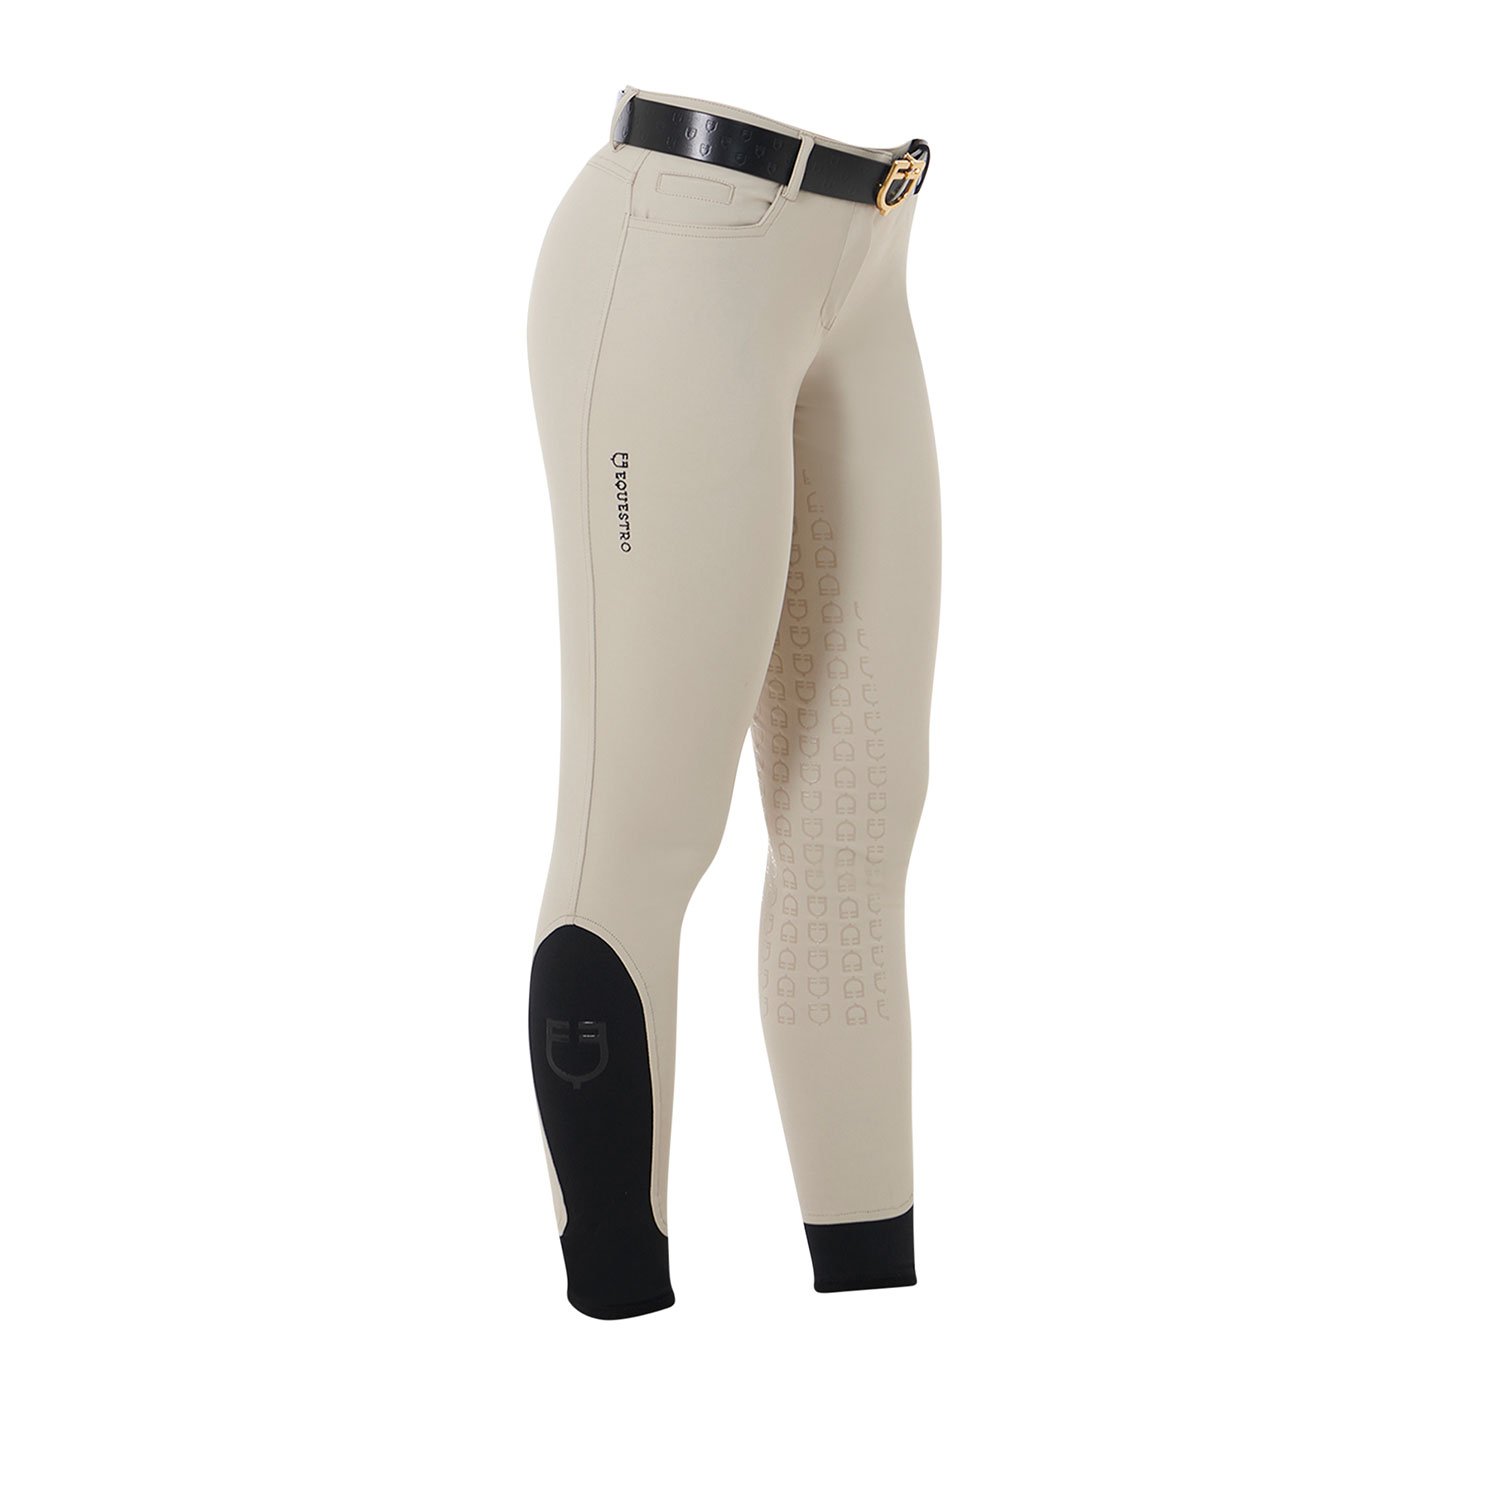 Pantaloni estivi equitazione donna modello Aria slim fit in tessuto tecnico con Full Grip - foto 3